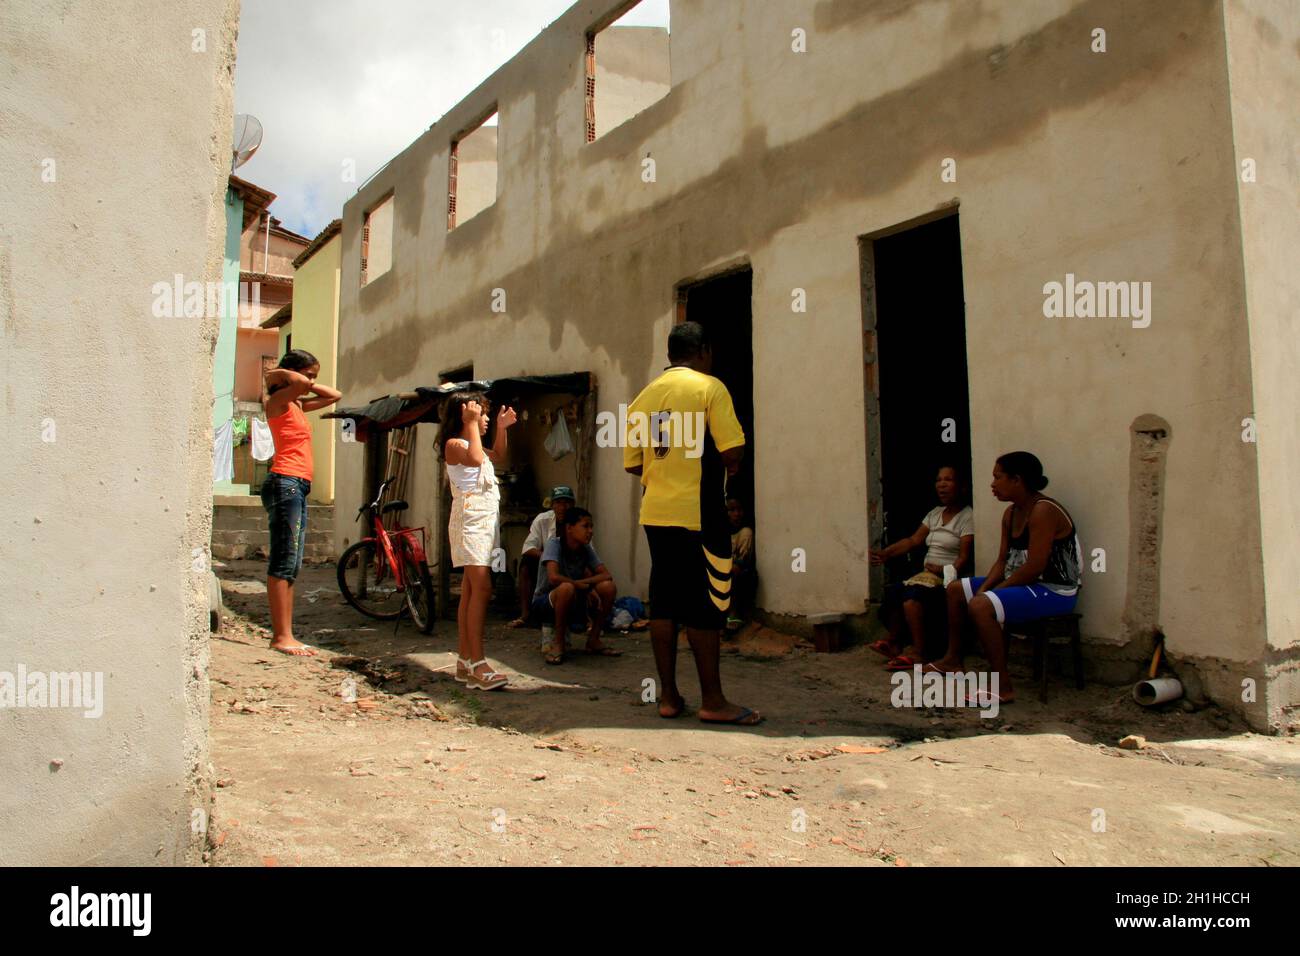 Eunapolis, bahia / brésil - 15 janvier 2009: Les gens qui sont membres de l'Association sans toit sont vus pendant l'invasion de la maison Banque D'Images